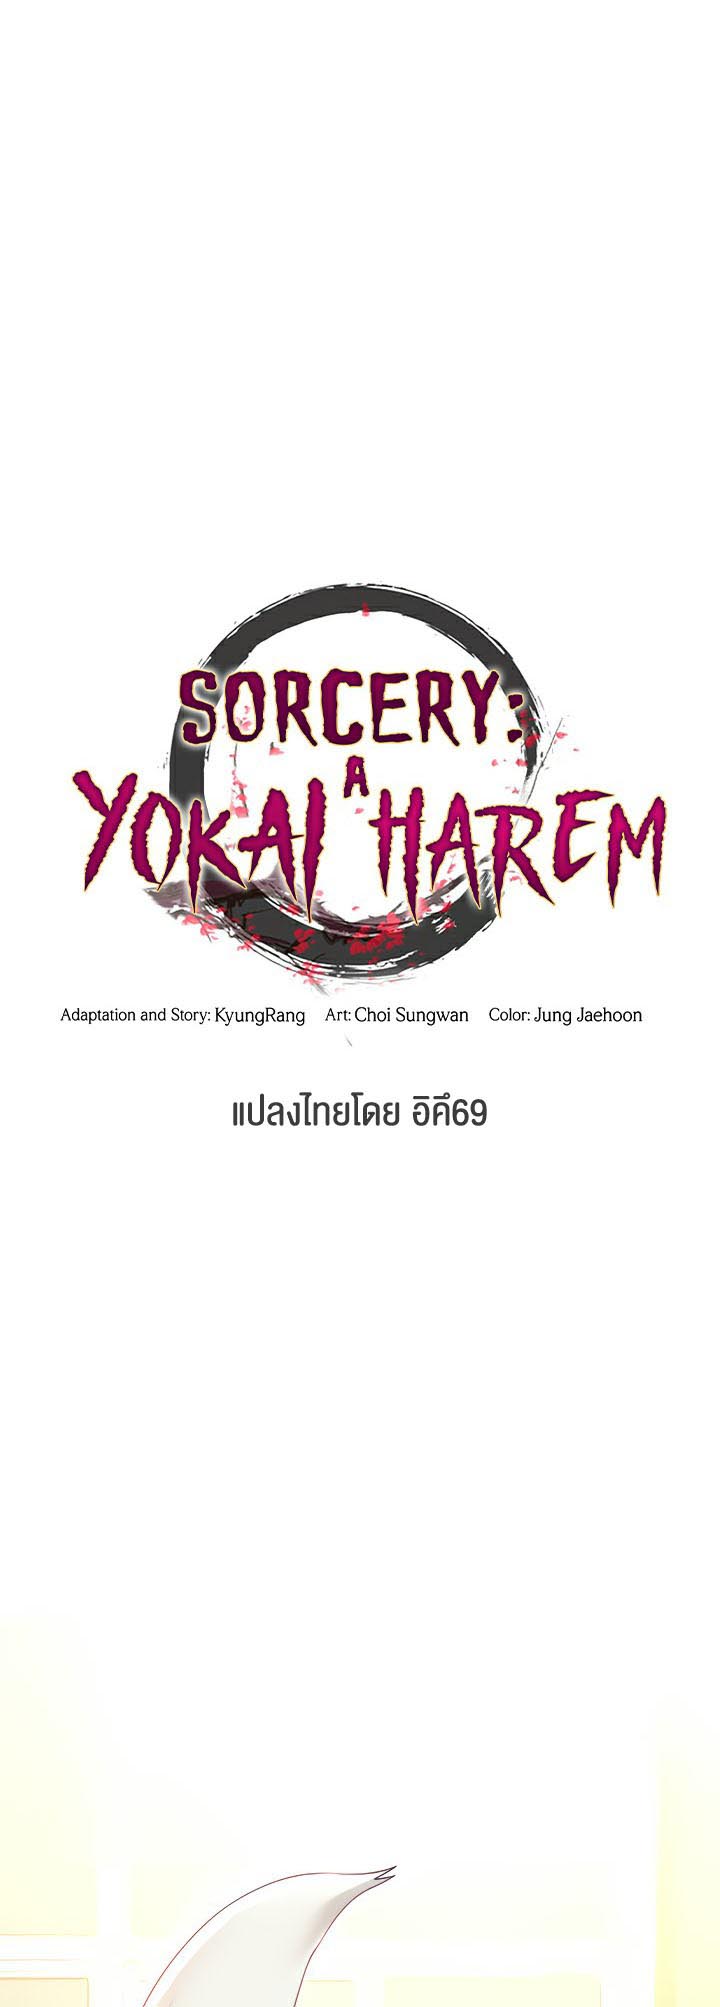 อ่านโดจิน เรื่อง Sorcery A Yokai Harem 5 06